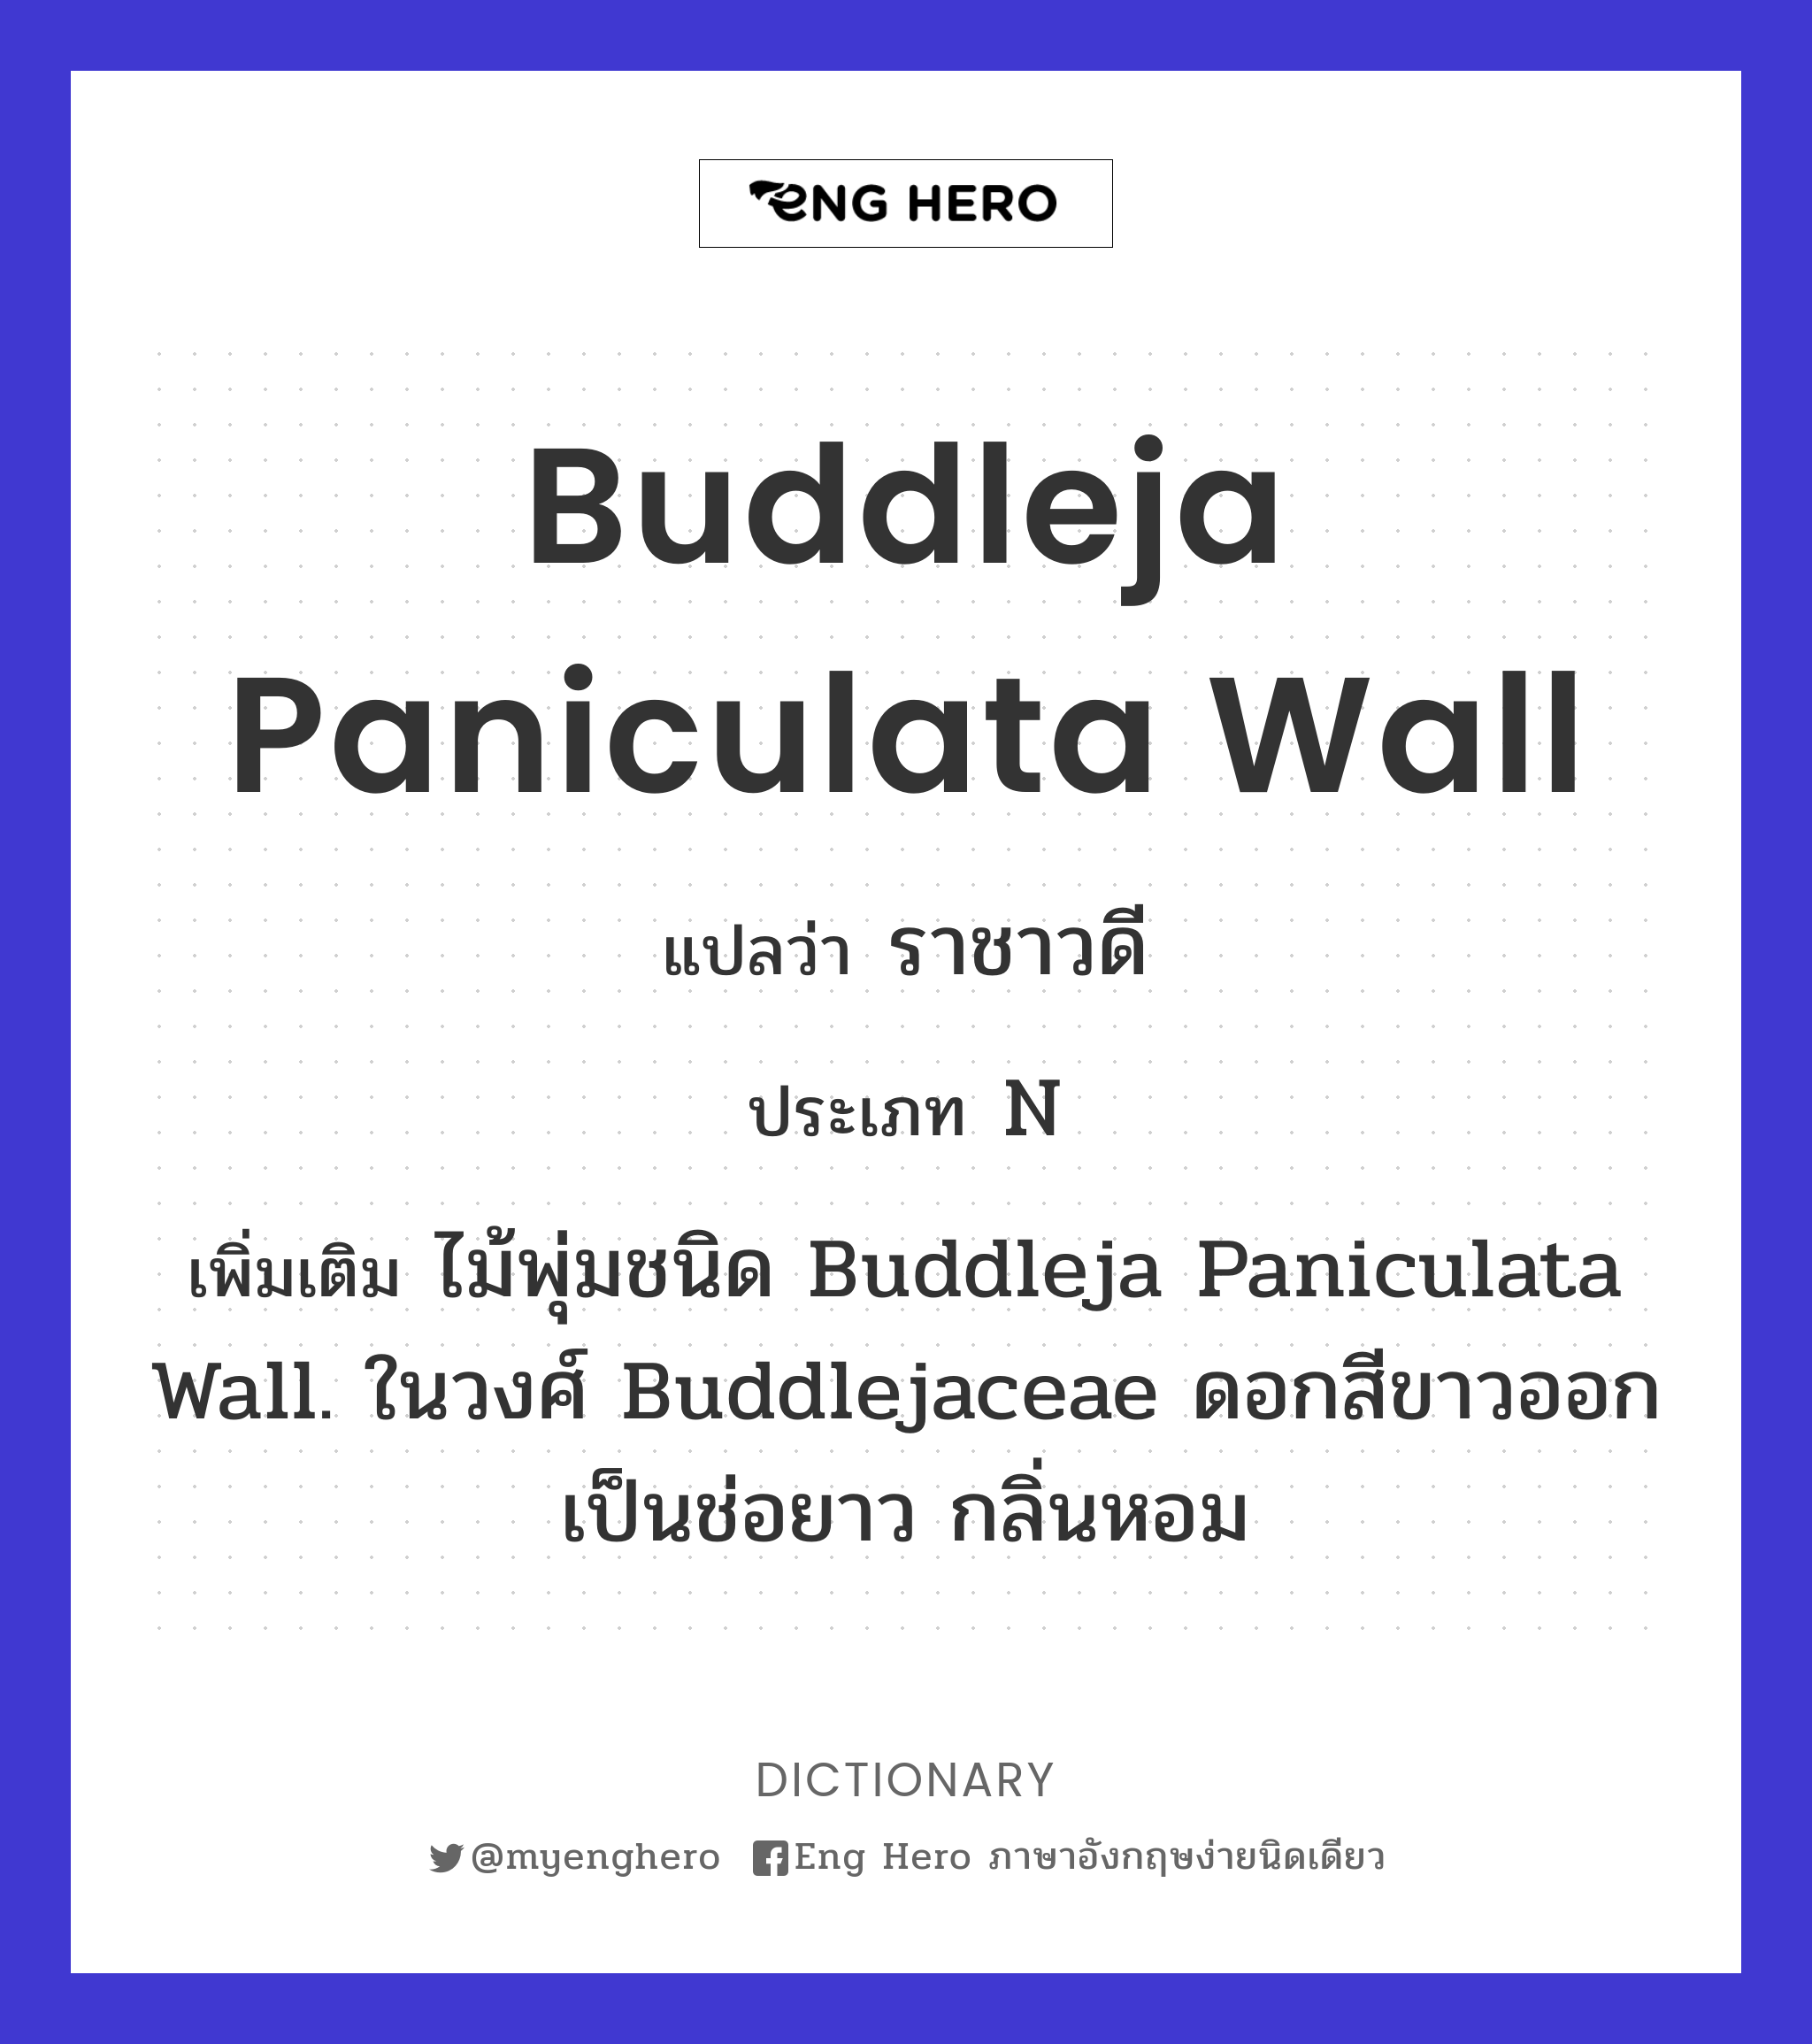 Buddleja paniculata Wall